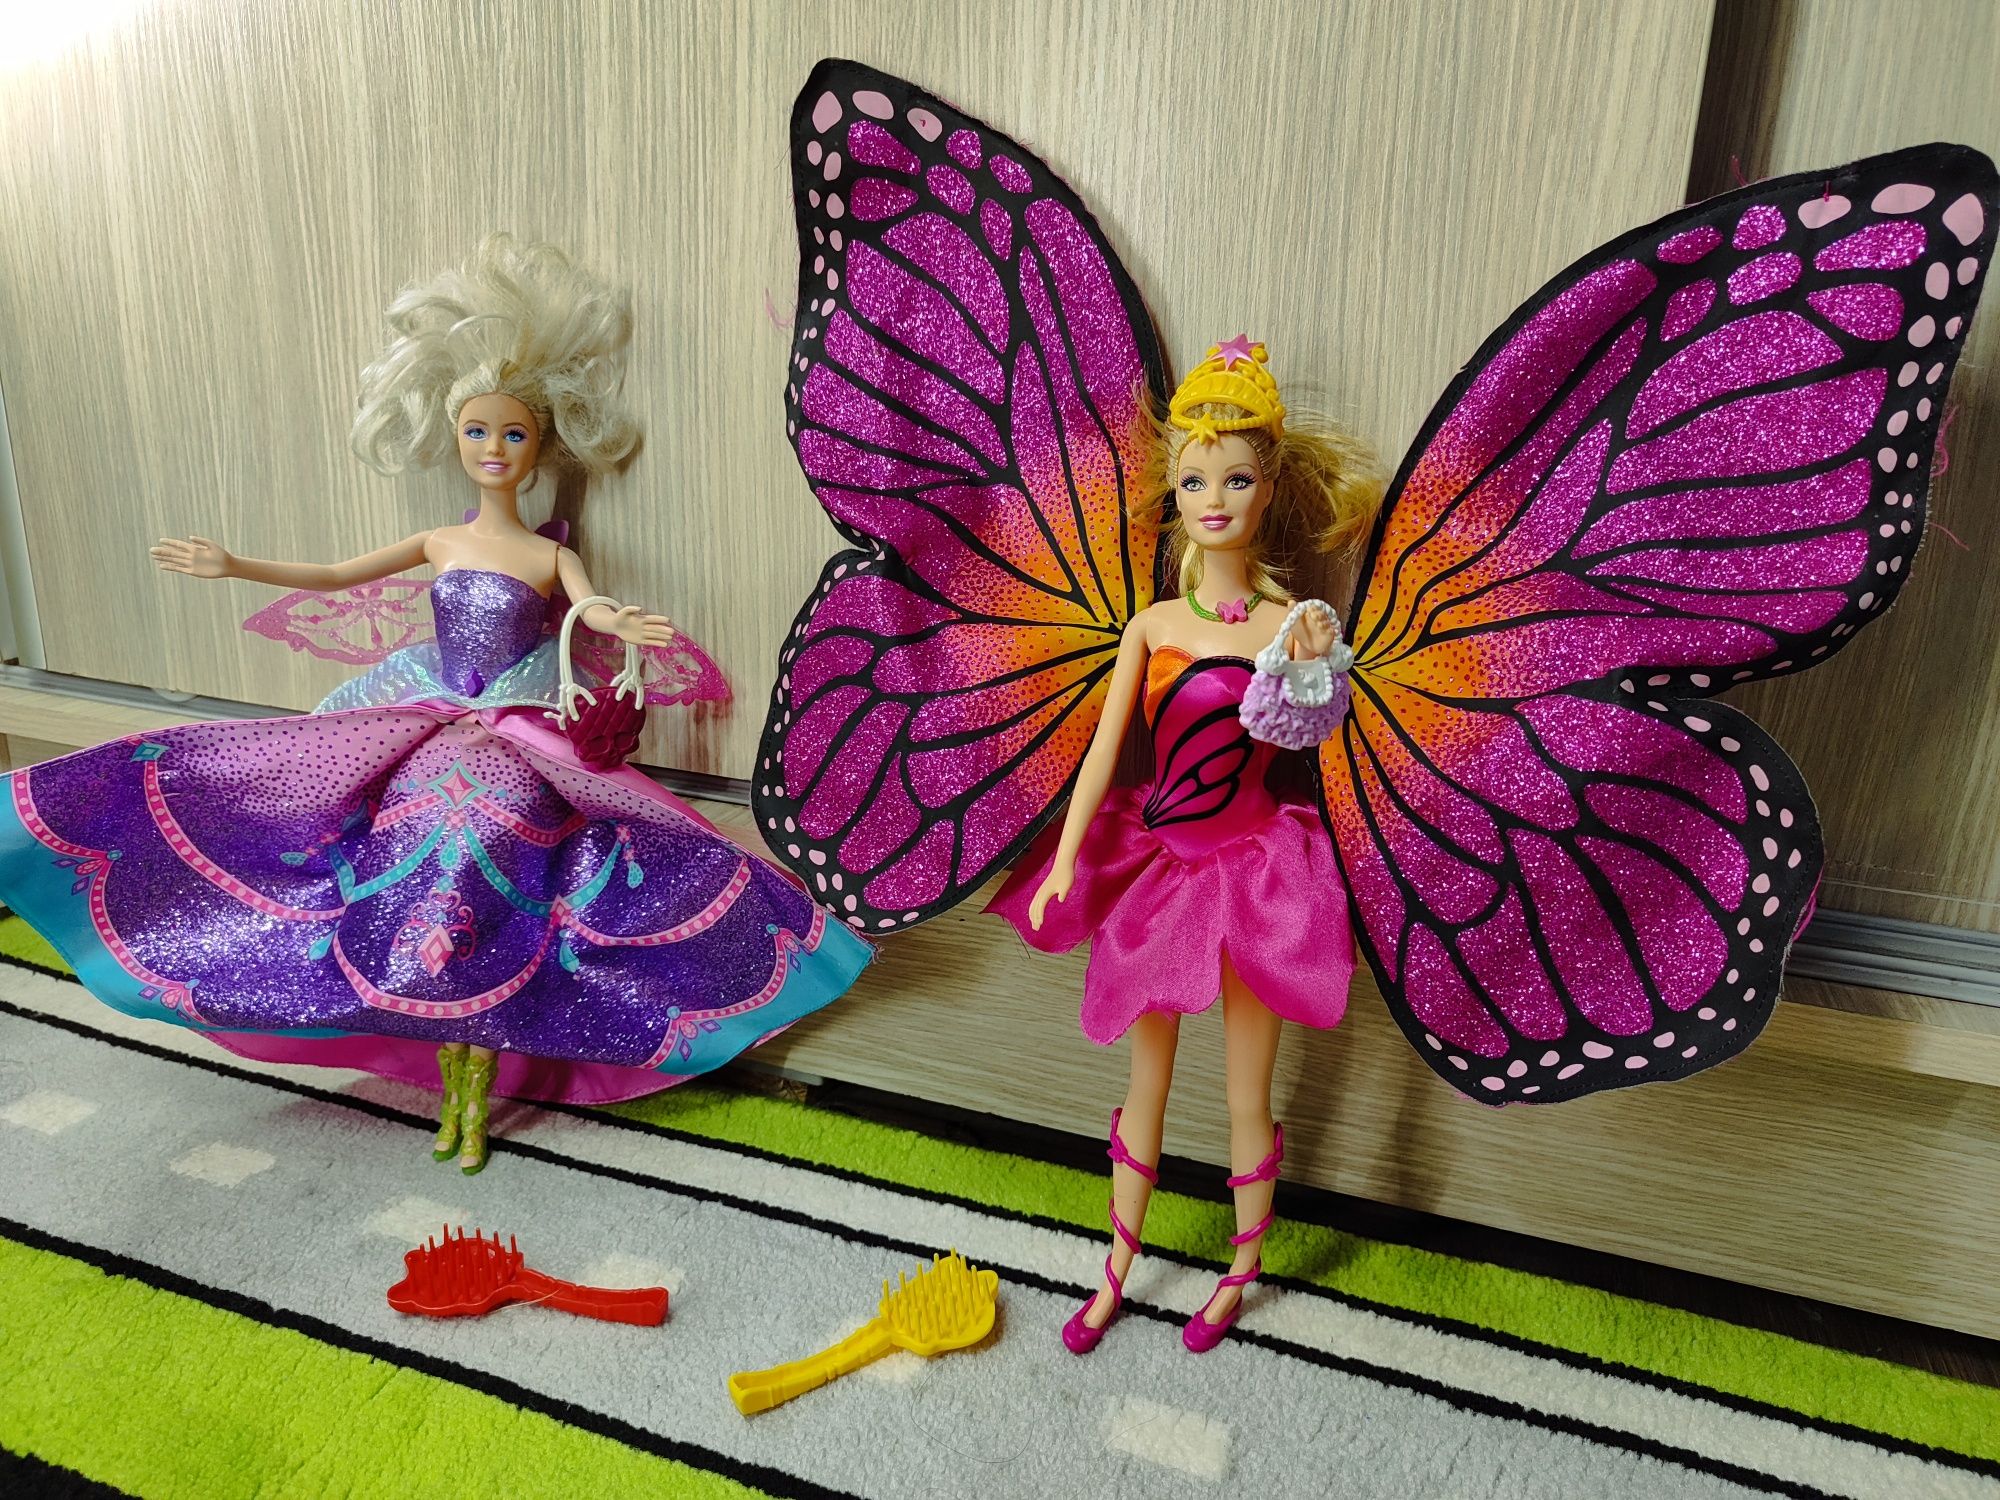 Куклы Барби с крыльями